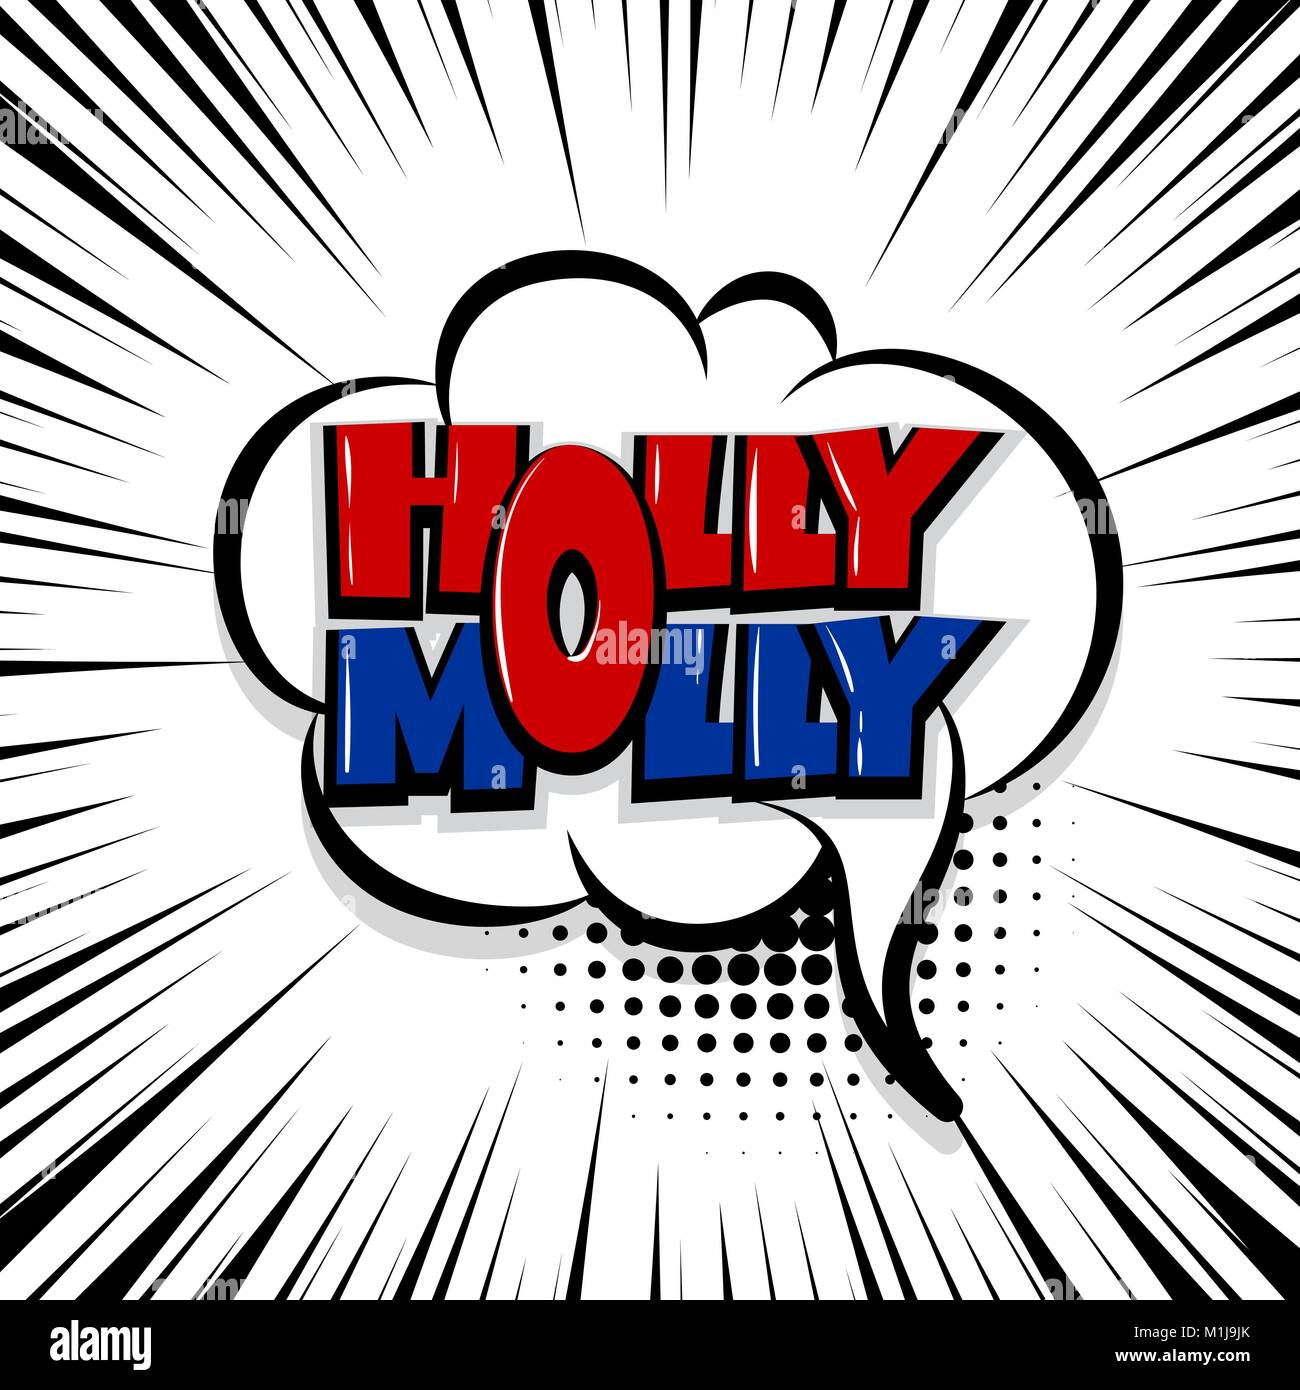 holly molly comic text stripperd backdrop Stock Vector